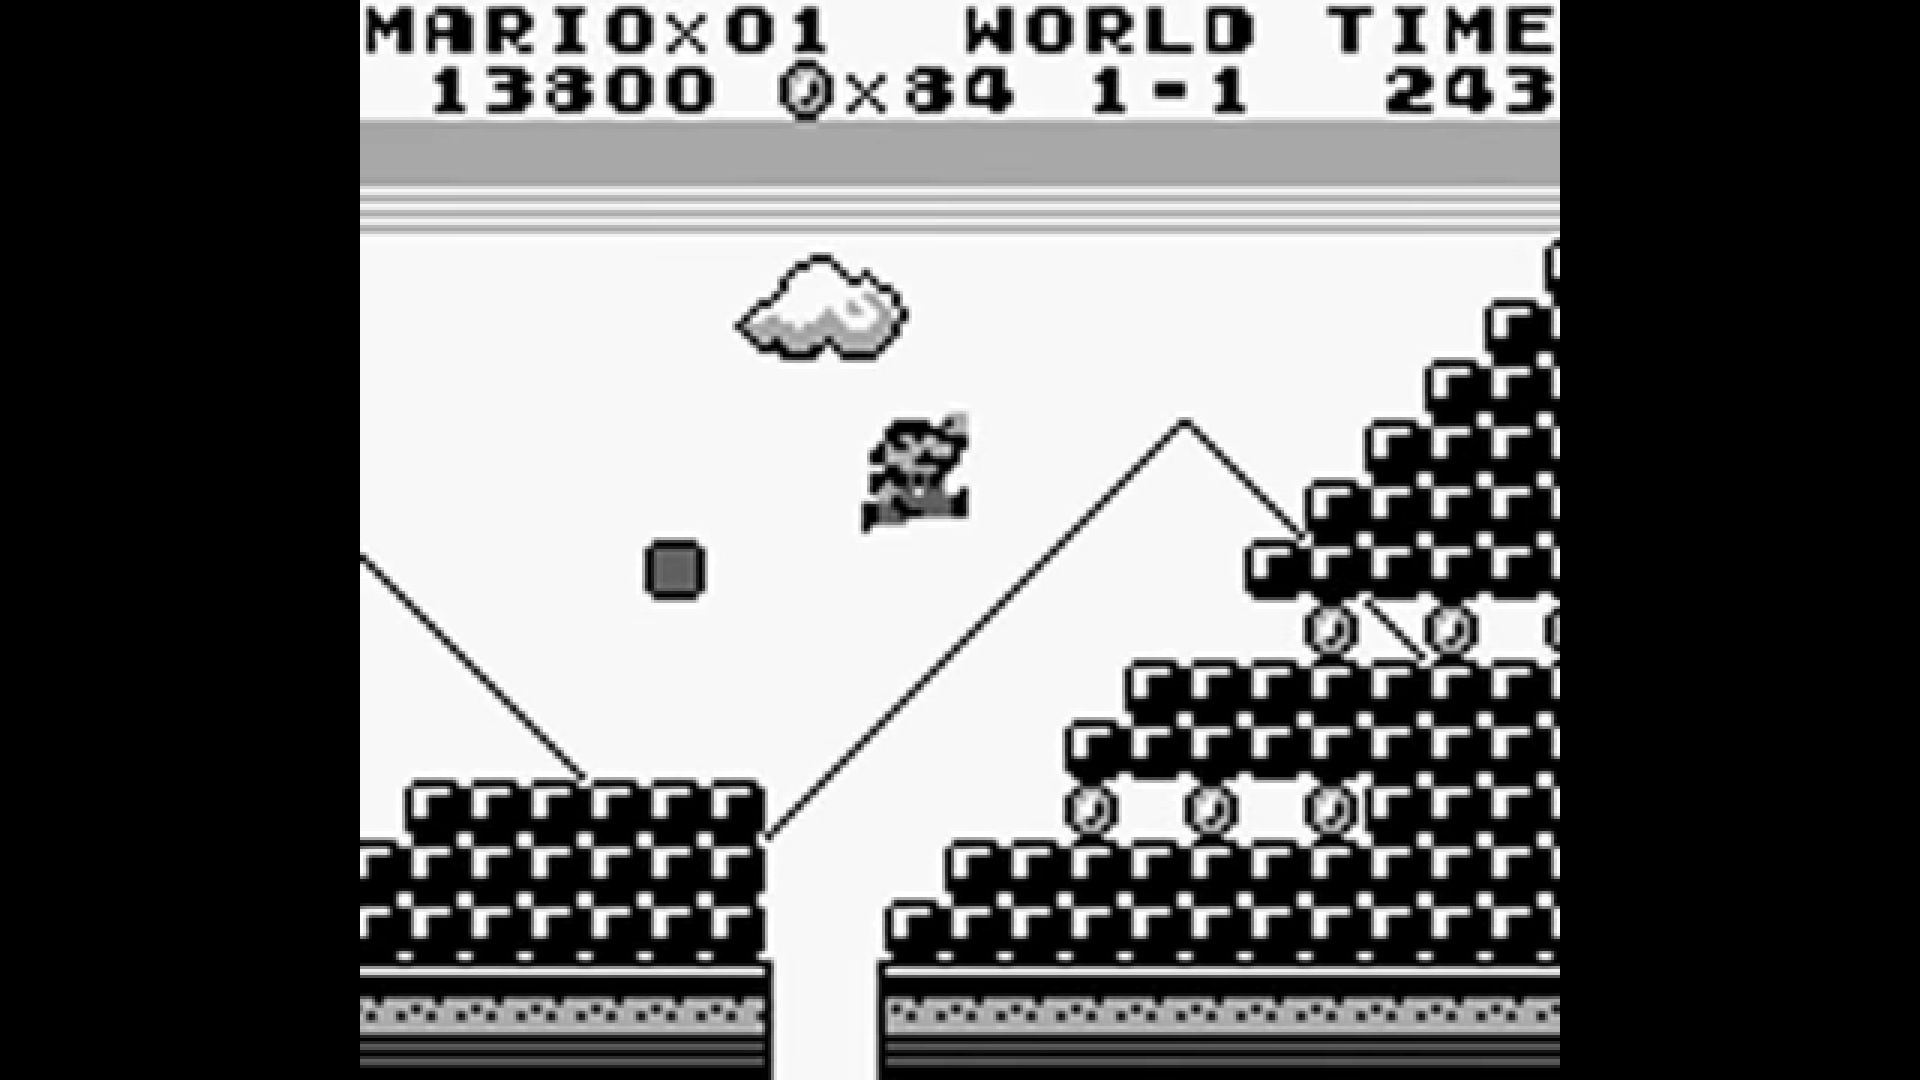 Super Mario Land je jedna od ključnih igara serijala, budući da se radi o prvoj punokrvnoj prenosivoj Super Mario igri. Igra je izdana u travnju 1989. godine za Nintendov prvi Gameboy, a radilo se ustvari o reizdanju prvog nastavka Super Marija za Gameboy. U svoje vrijeme, to je kompleksan i impresivan podvig.